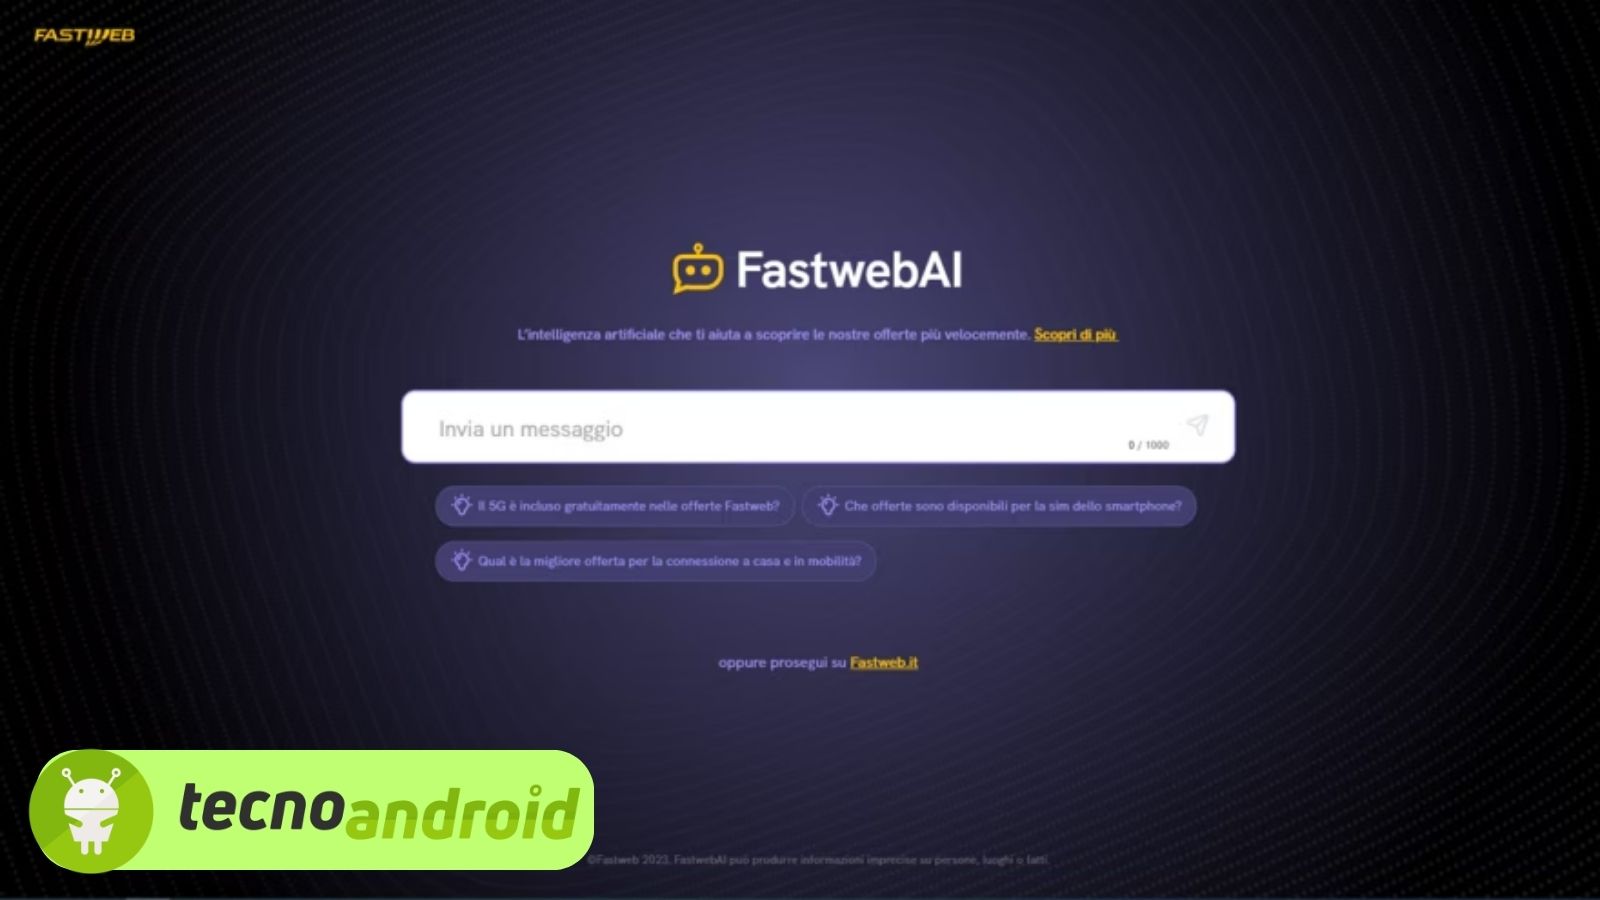 Anche Fastweb si affida all’intelligenza artificiale: arriva FastwebAI